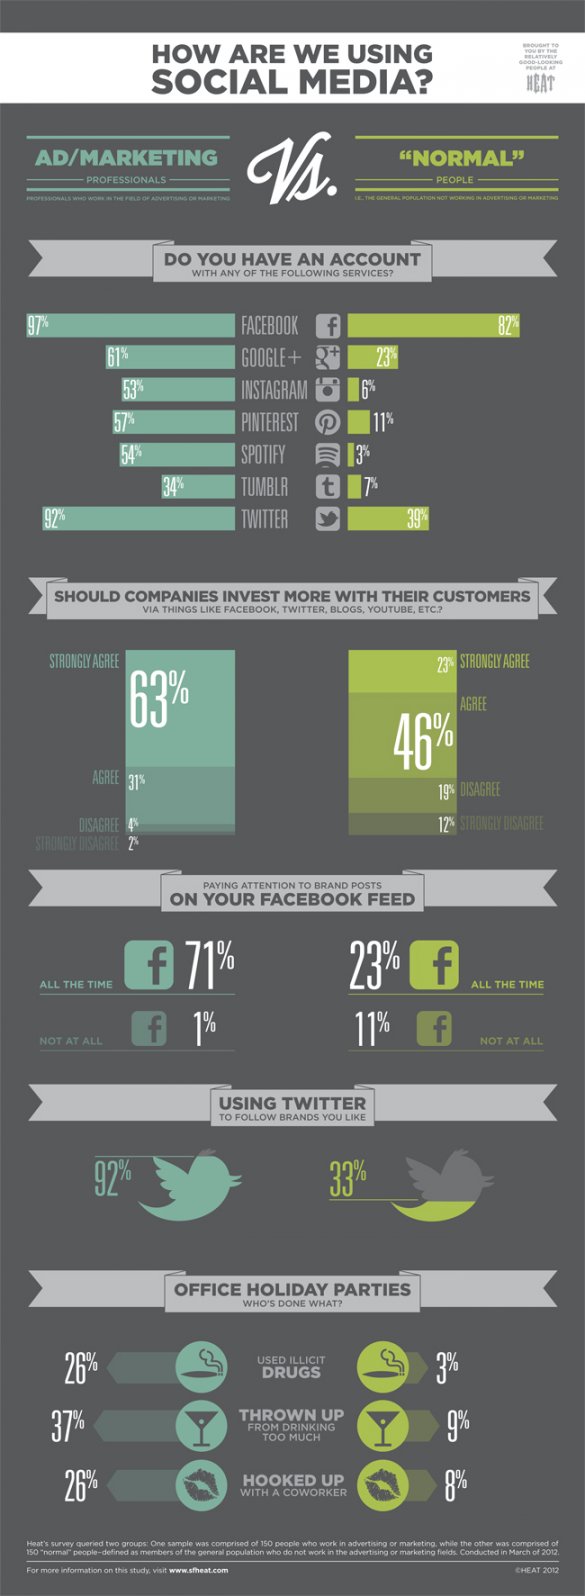 social media use PR Marketing vs normal person